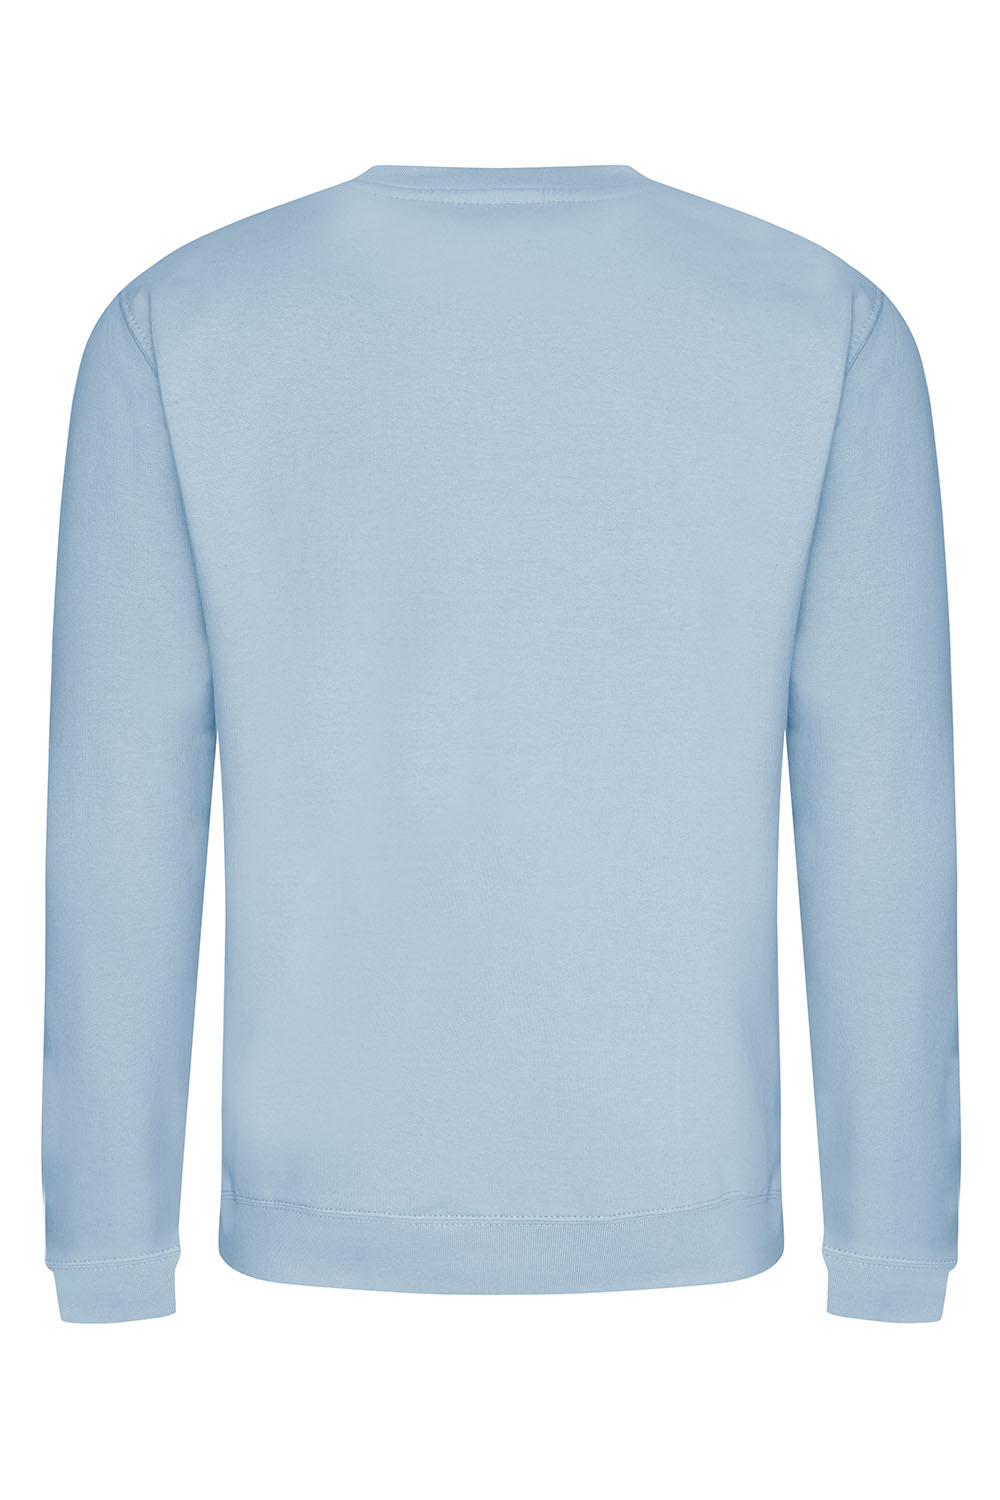 Plain Sweatshirt In Sky Blue (Single)